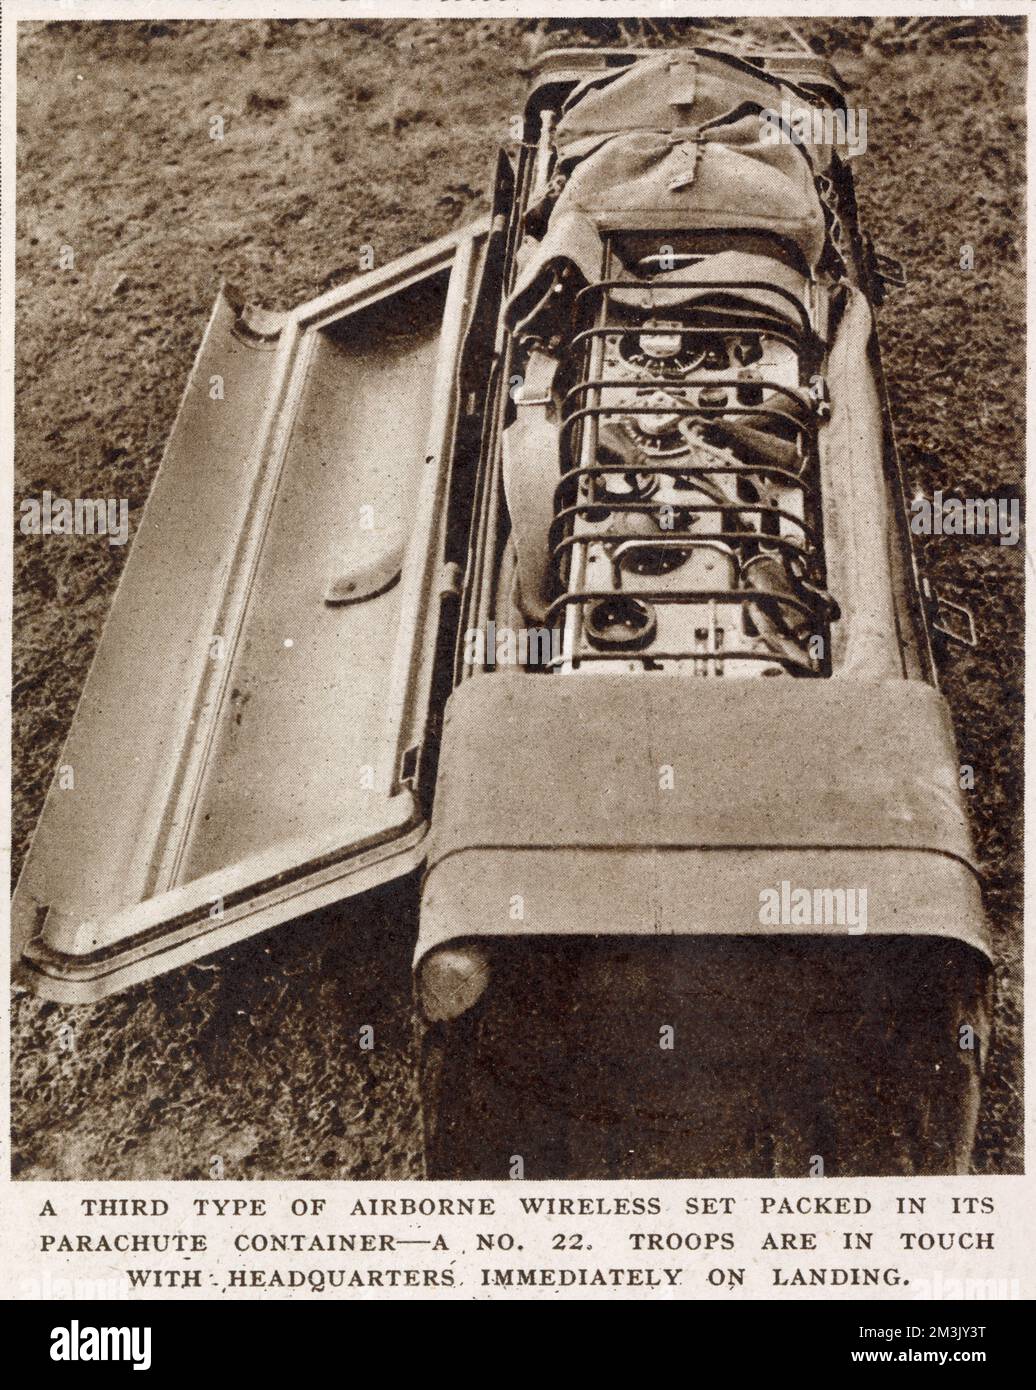 Photographie montrant un poste de radio de type Numéro 22, emballé dans son conteneur de parachute, utilisé par les Forces aéroportées britanniques, 1944. Ce type d'équipement a été utilisé dans l'opération 'Market Garden', par la British First Airborne Division, à Arnhem, en Hollande. Banque D'Images